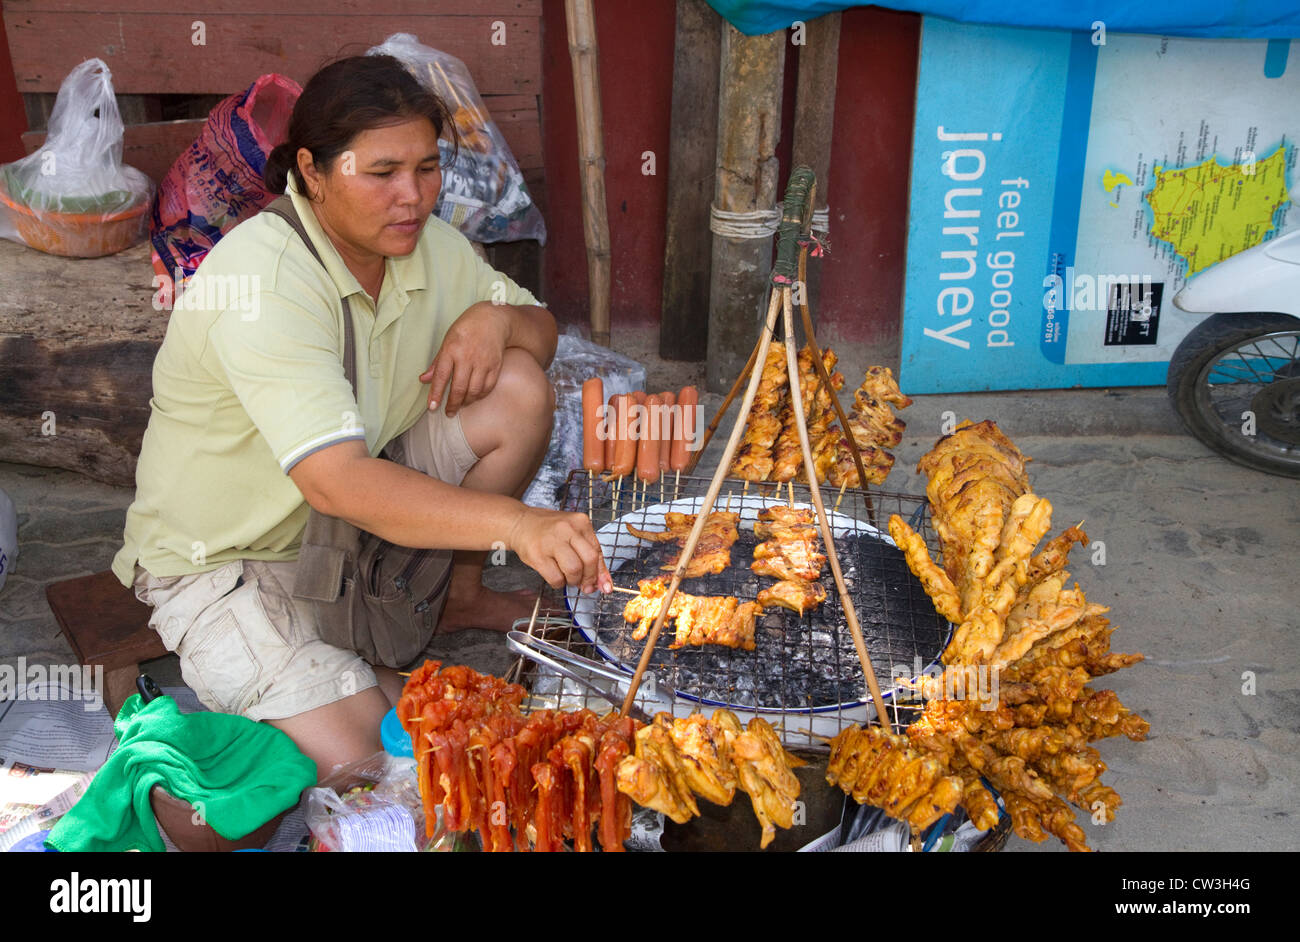 Lebensmittel Verkäufer grillen Fleisch über ein Holzkohle Feuer am Chaweng Beach auf der Insel Ko Samui, Thailand. Stockfoto